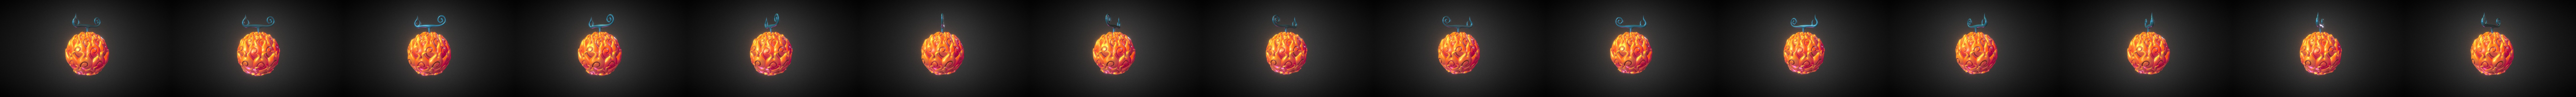 Devilfruit 3D models - Sketchfab